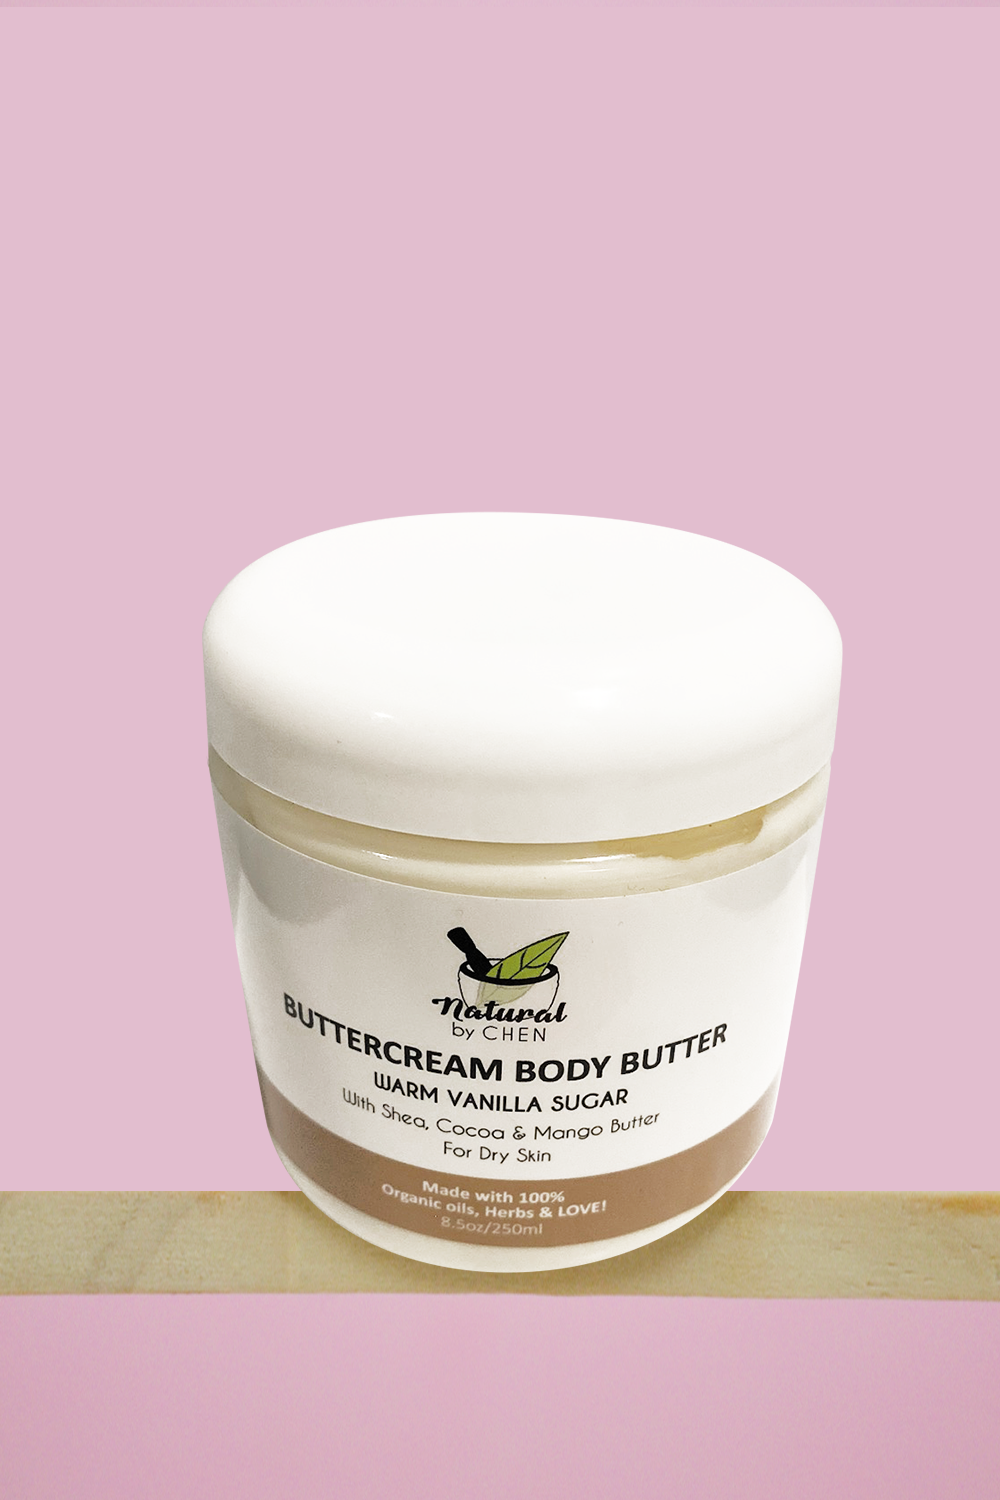 Buttercream Body Butter